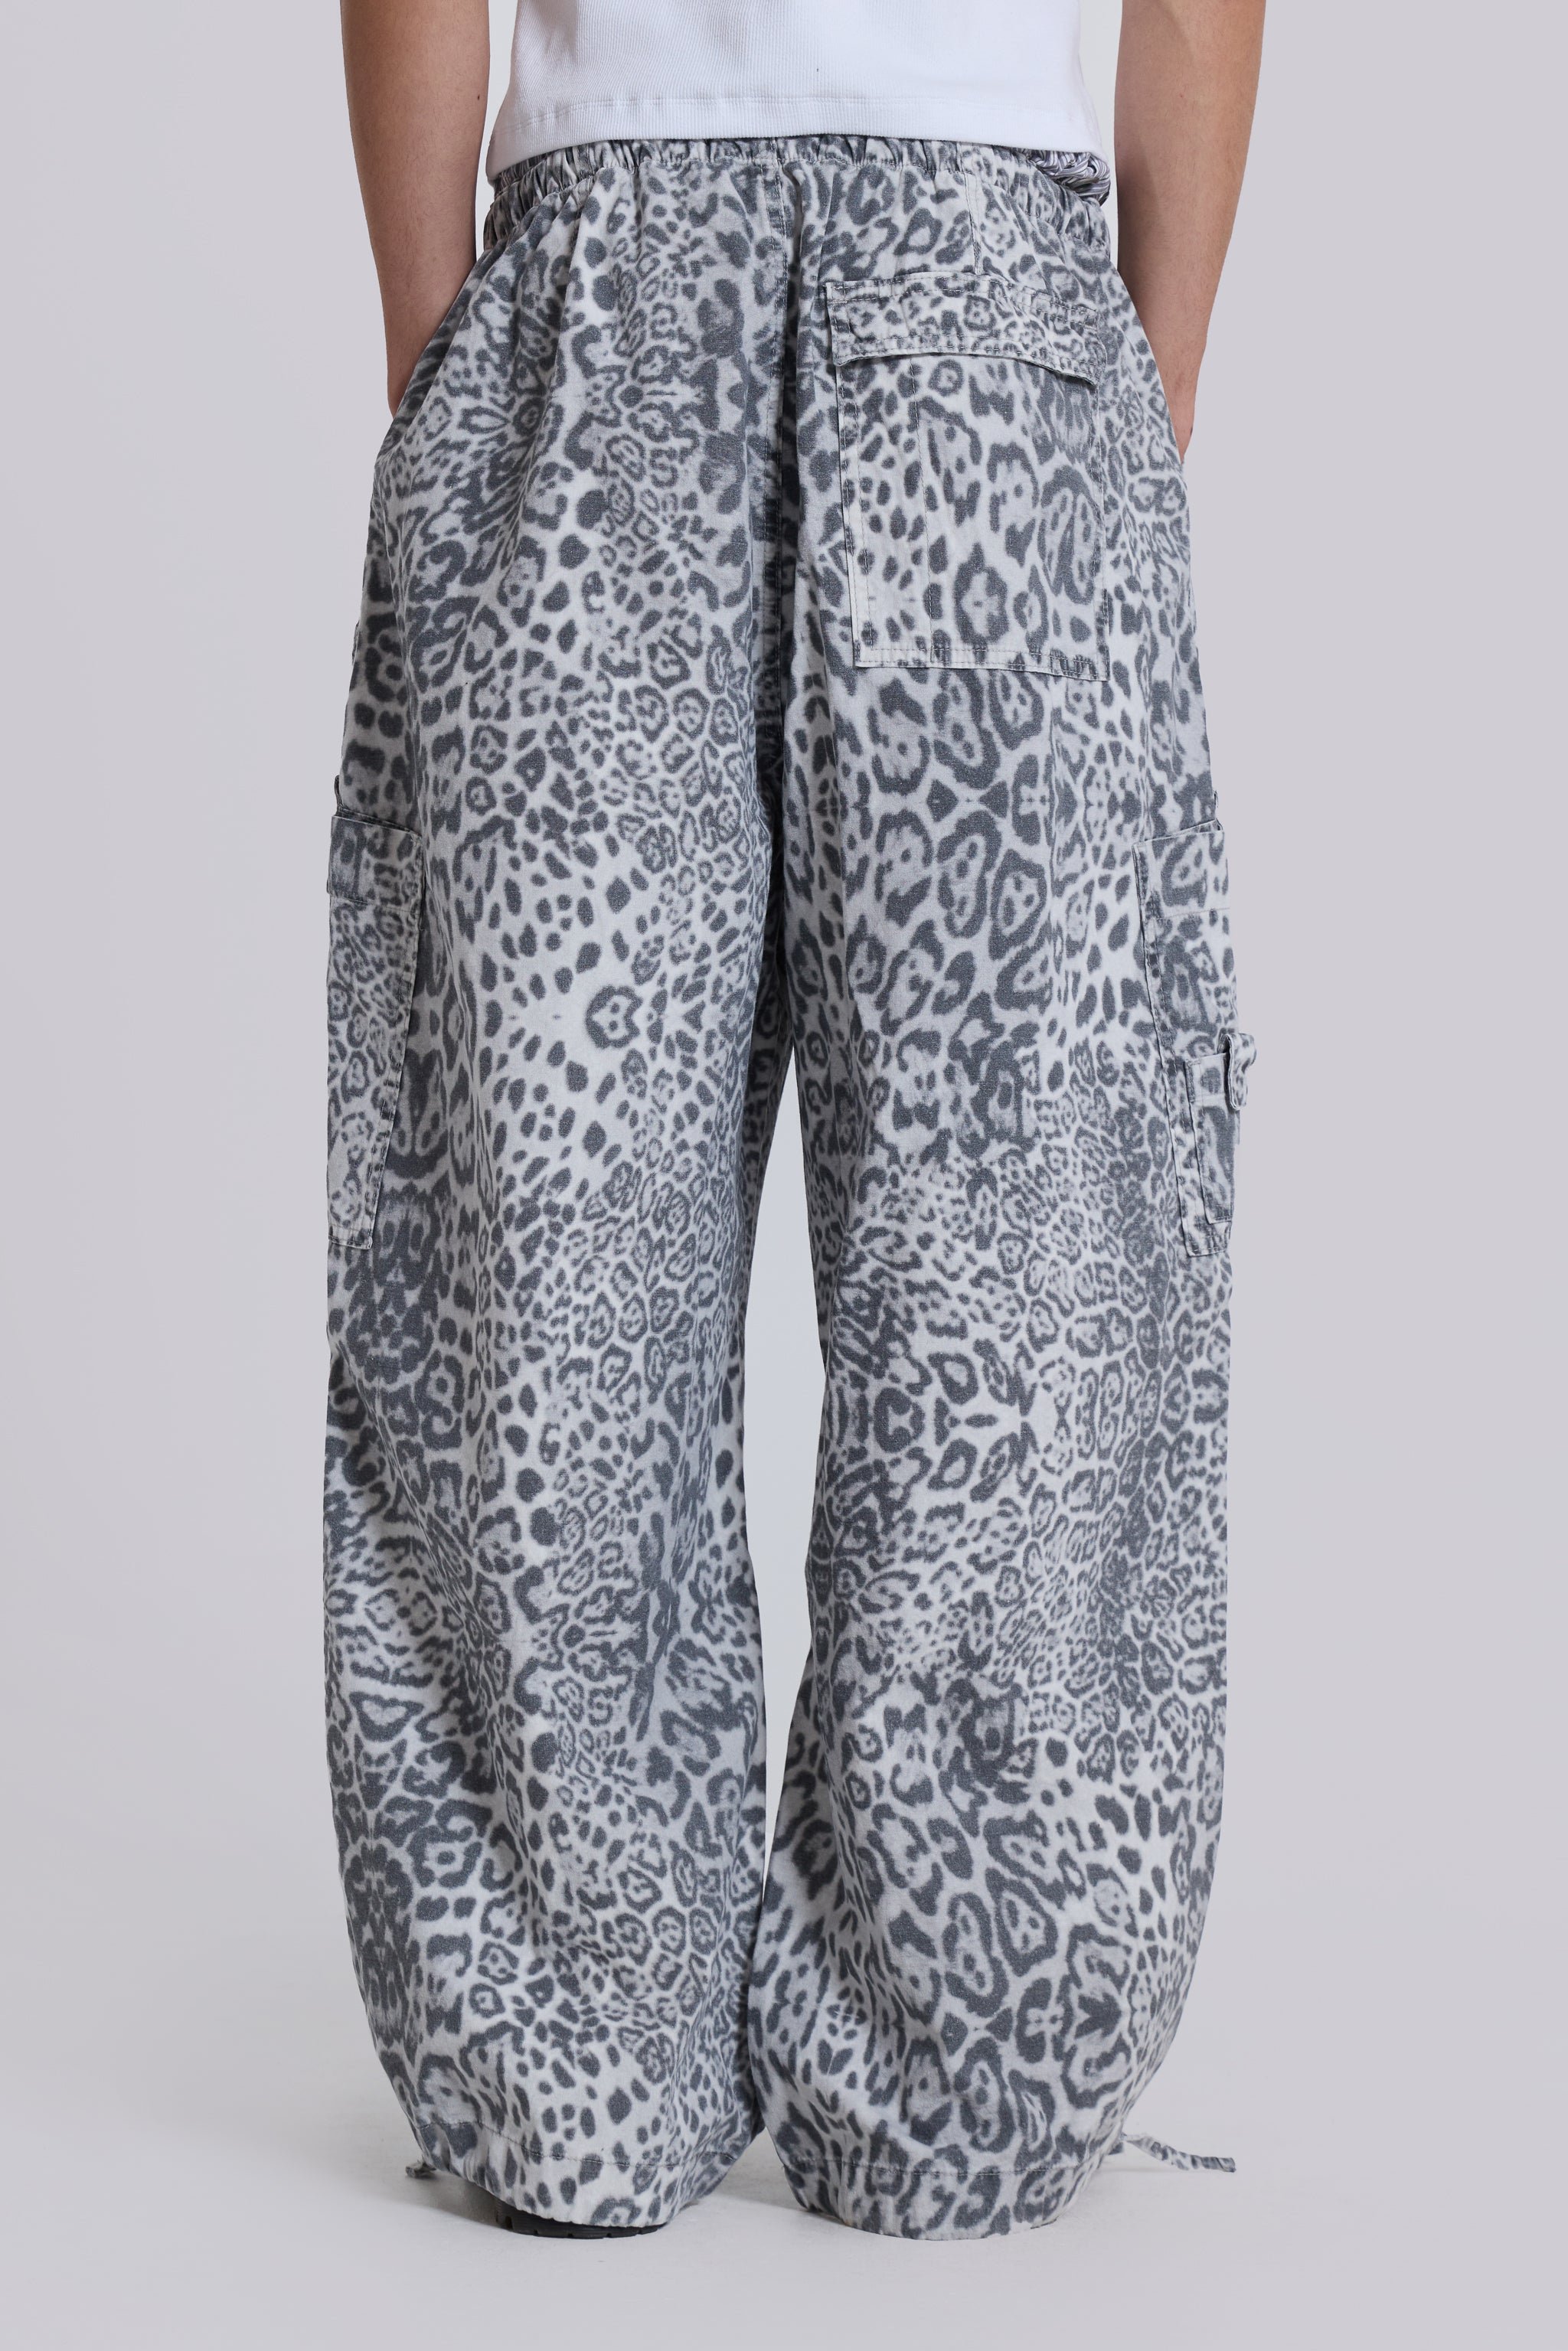 Snow Leopard Parachute Pants